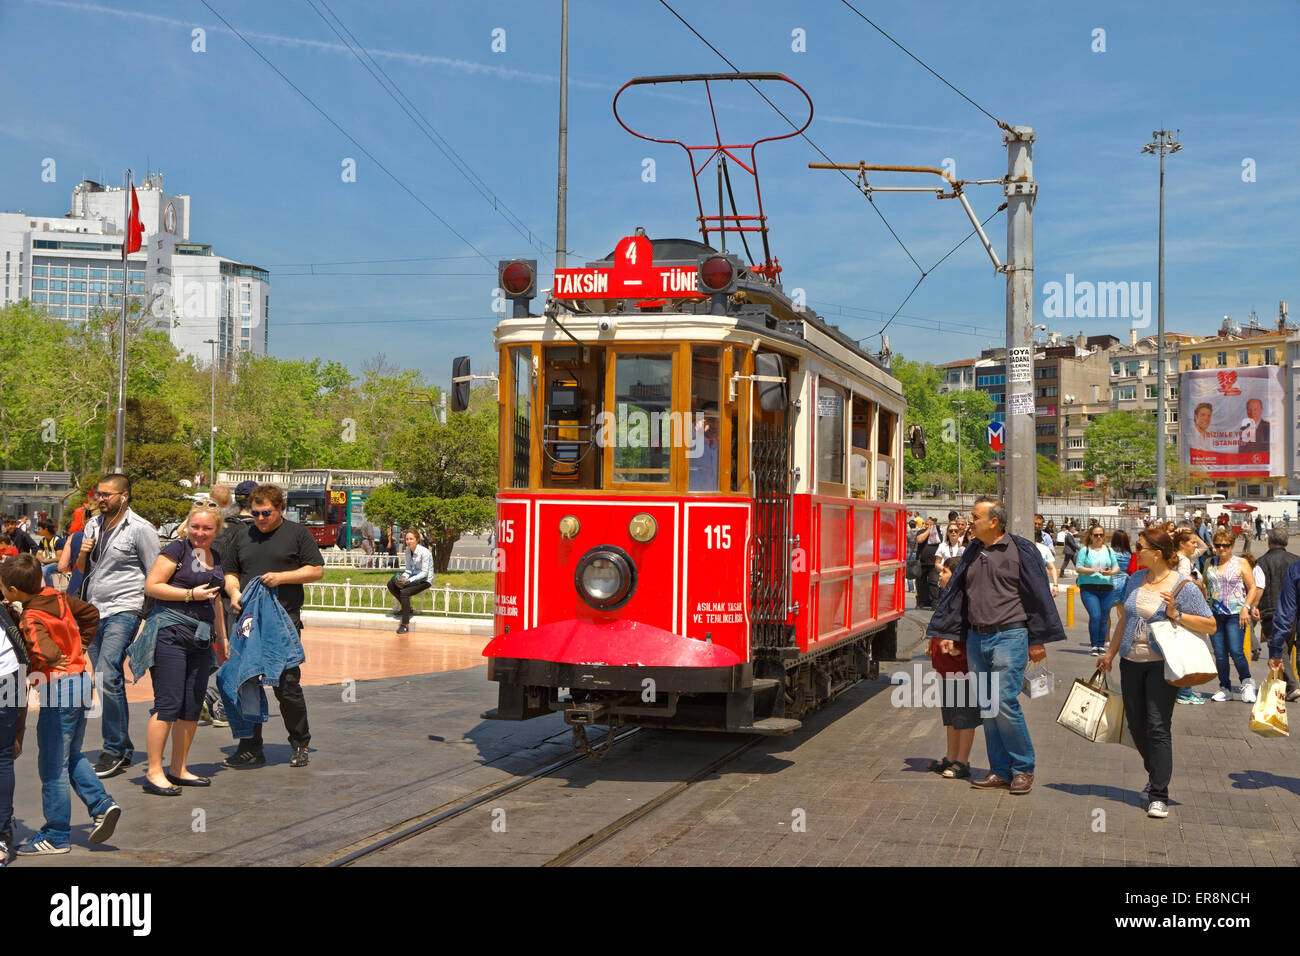 Alte antike Straßenbahn am Taksim-Platz, Istanbul, Türkei. Bietet kurze Fahrten für Touristen durch die Fußgängerzone Istanbuls. Stockfoto